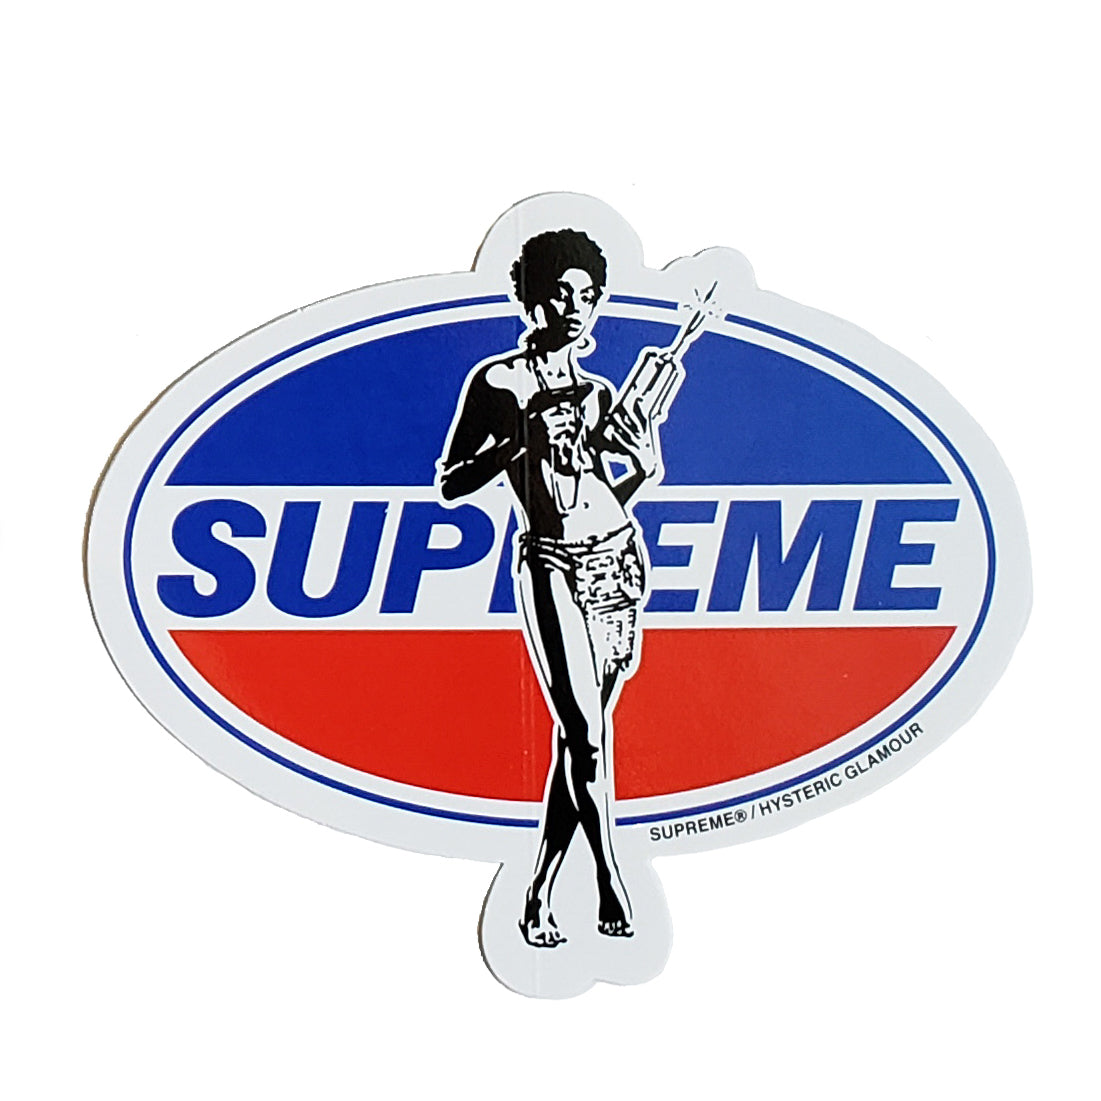 Supreme Hysteric Glamour Pepsi Girl Sticker 2017 | Supreme Stickers